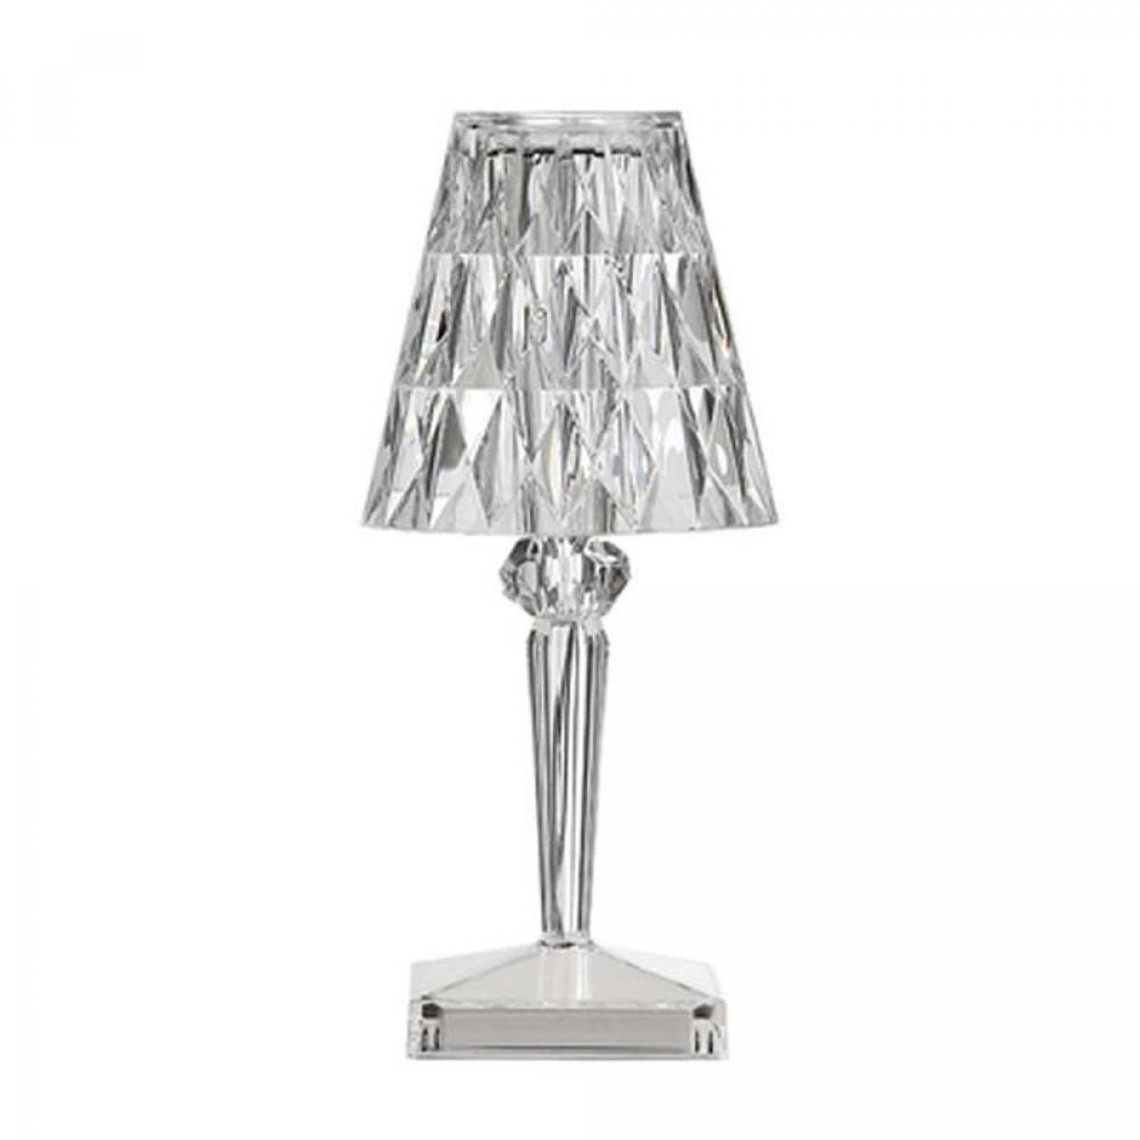 Lampes à poser Universal Lampe de table en diamant de 11,5 cm, 220V USB net rechargeable table de chevet rouge décorative lampe LED en cristal, lampe LED acrylique, lampe transparente